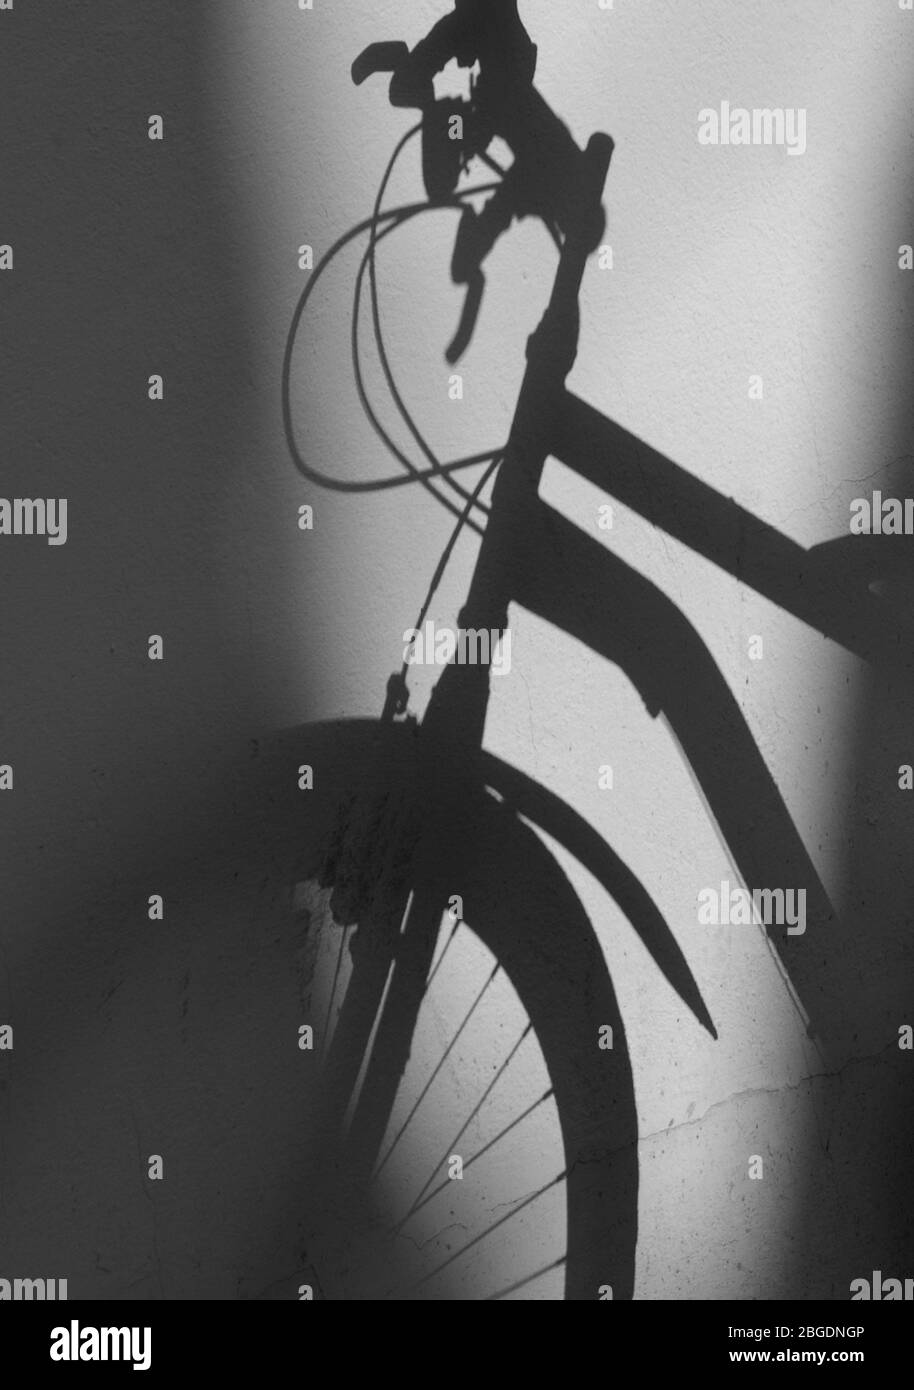 Schatten des Fahrrads gegen eine Ebene Wände mit Bremshebel, Bremszüge, Vorderrad und Teil des Rahmens in klarem Schatten Stockfoto